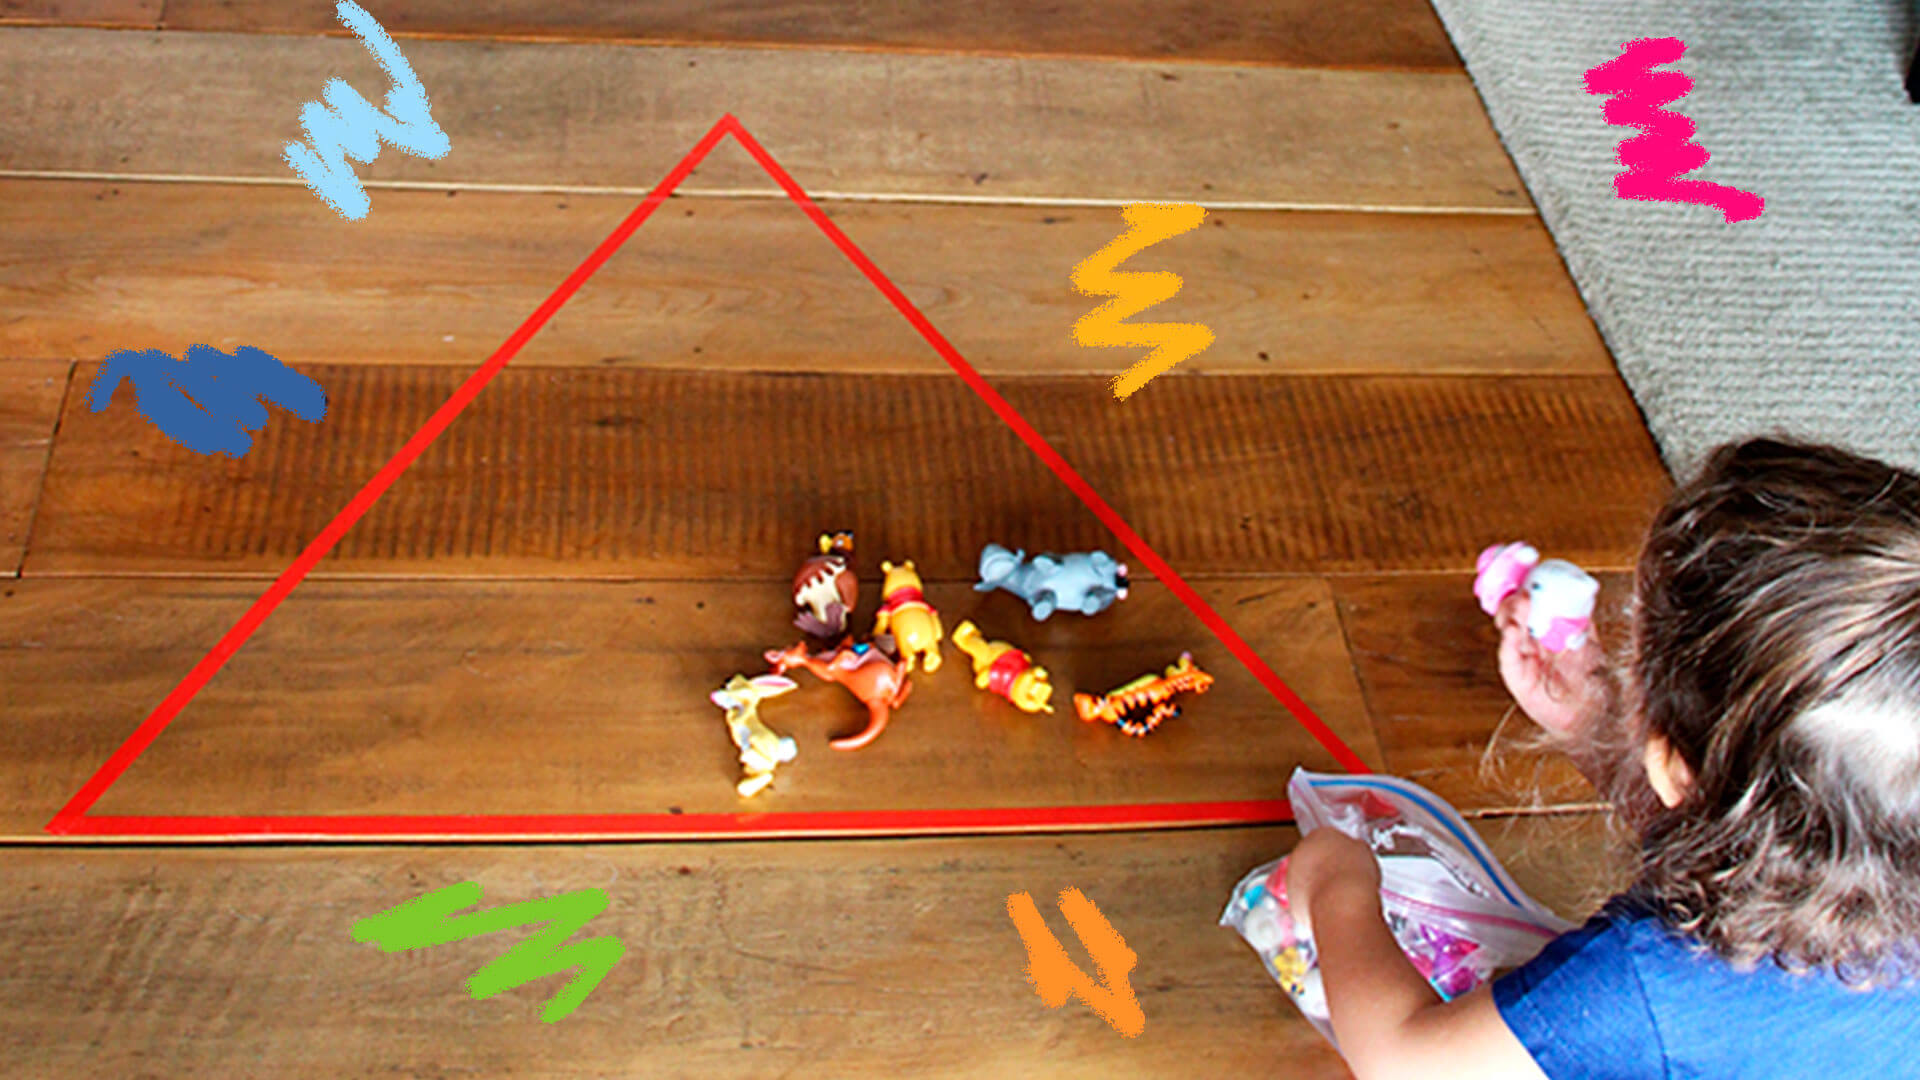 Uma criança brinca no chão com fita crepe e miniaturas de brinquedos